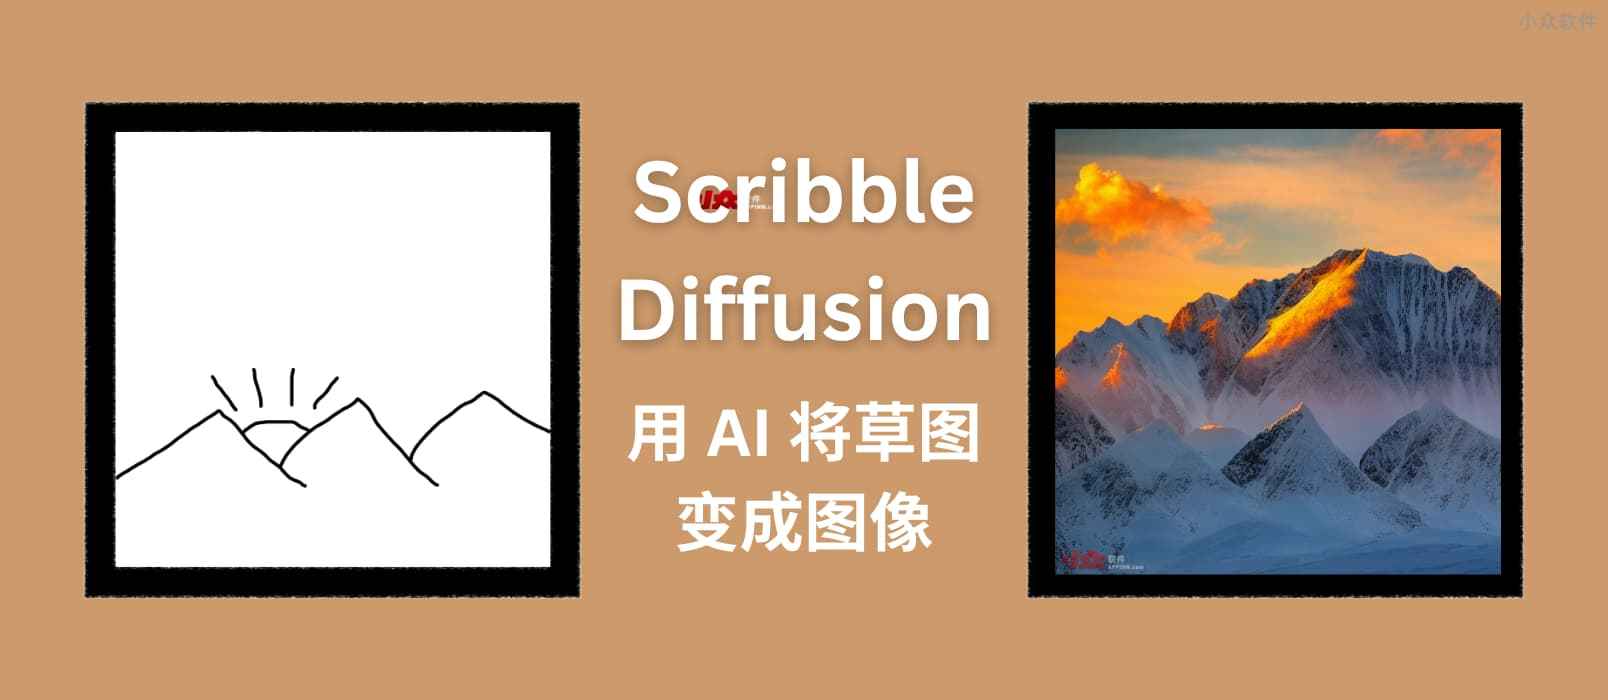 Scribble Diffusion - AI 画画，将手绘草稿转换为图片，基于 ControlNet，太搞笑了 19